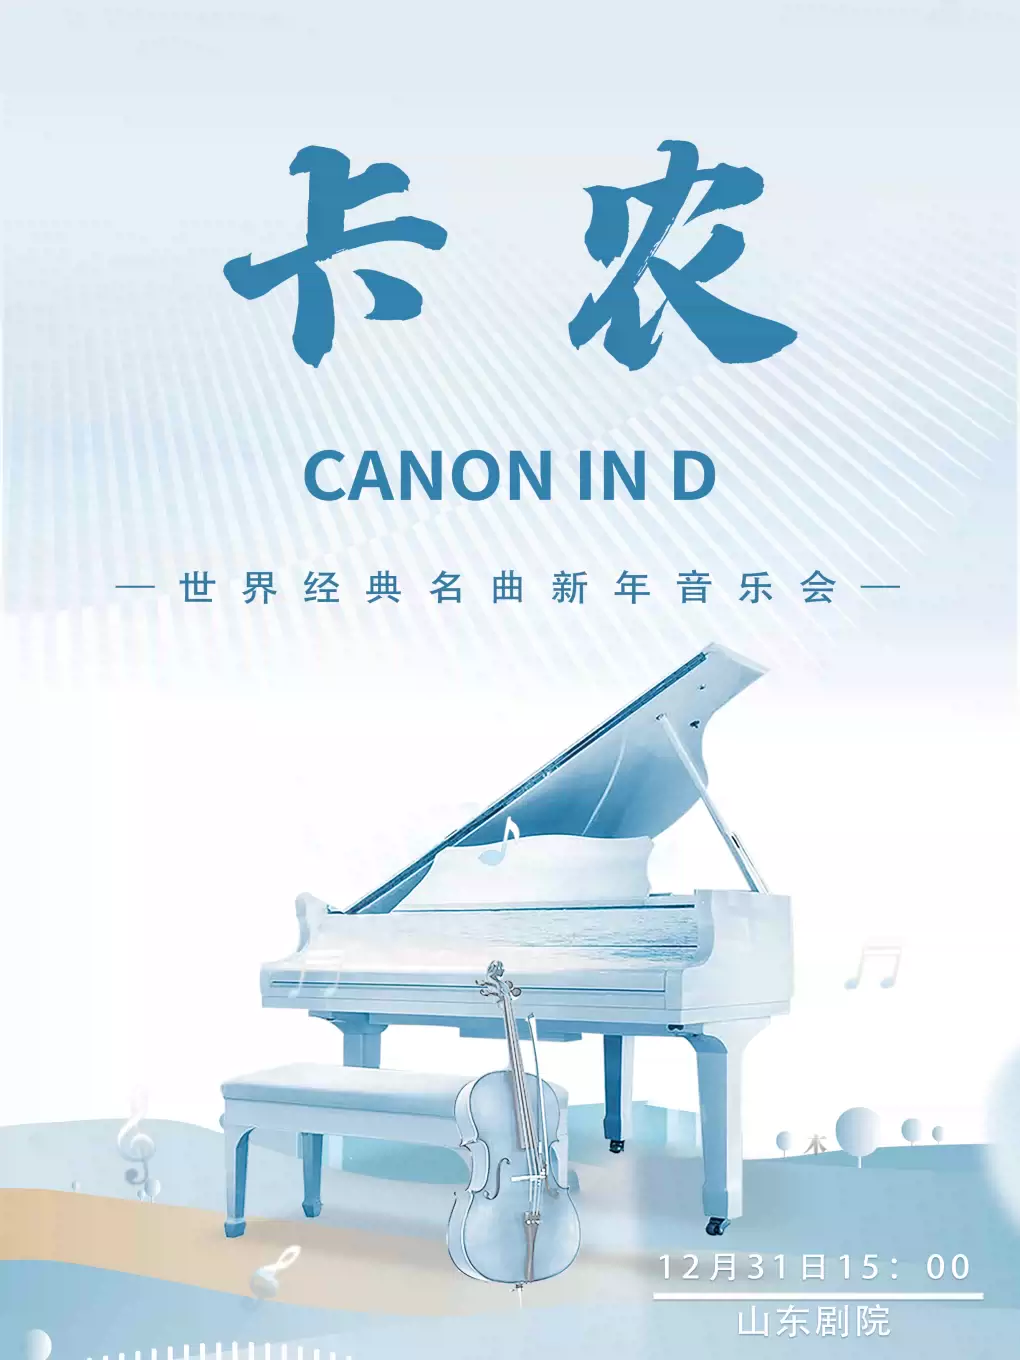 【济南】 《卡农 Canon in D》世界经典名曲新年音乐会